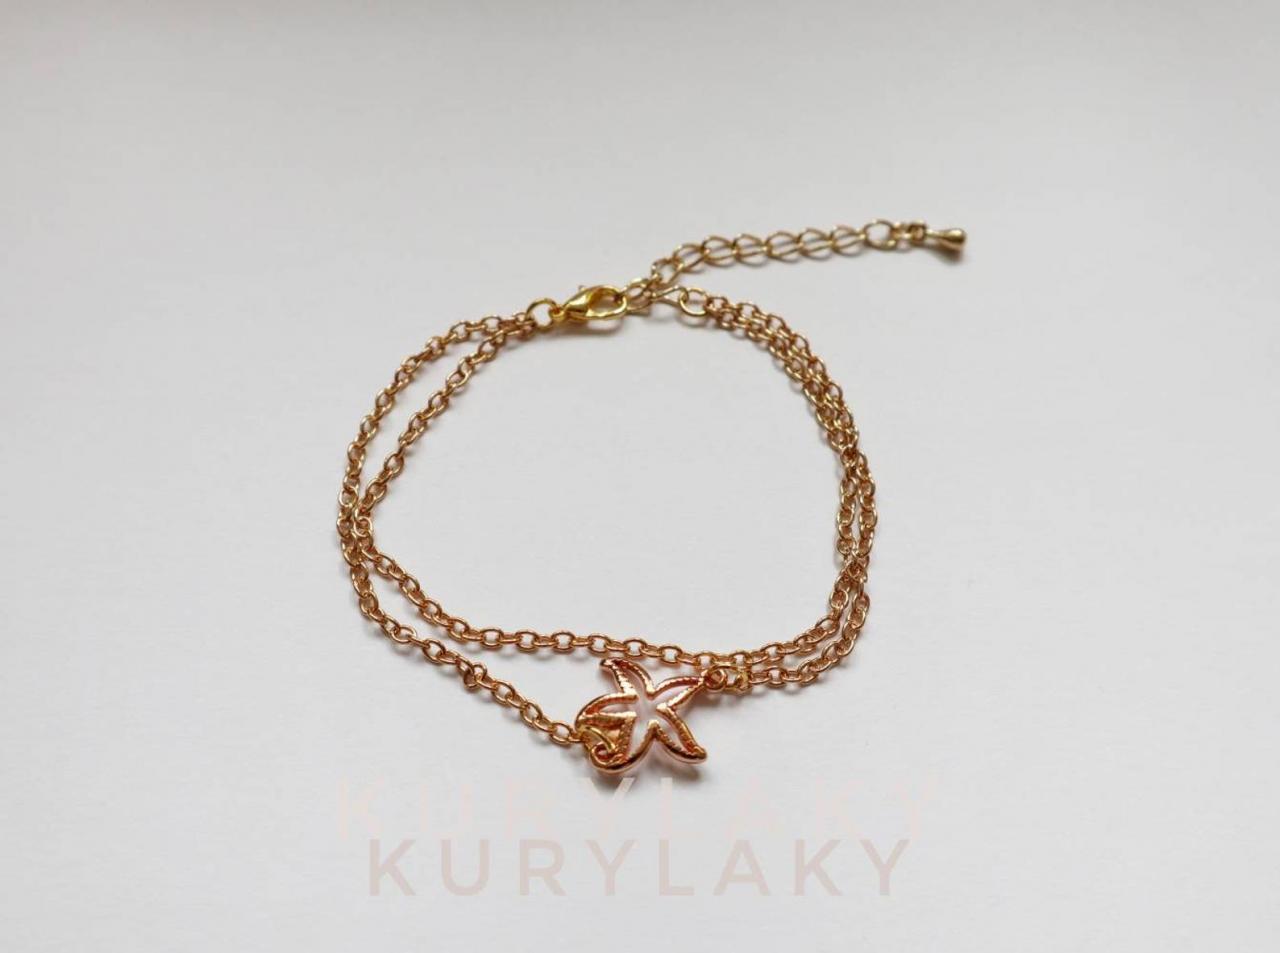 Starfish Charm Bracelet, Golden Bracelet, Women Bracelet, Girl Bracelet, Jewelry For Her, Charm Bracelet, Golden Women Bracelet,gift For Her